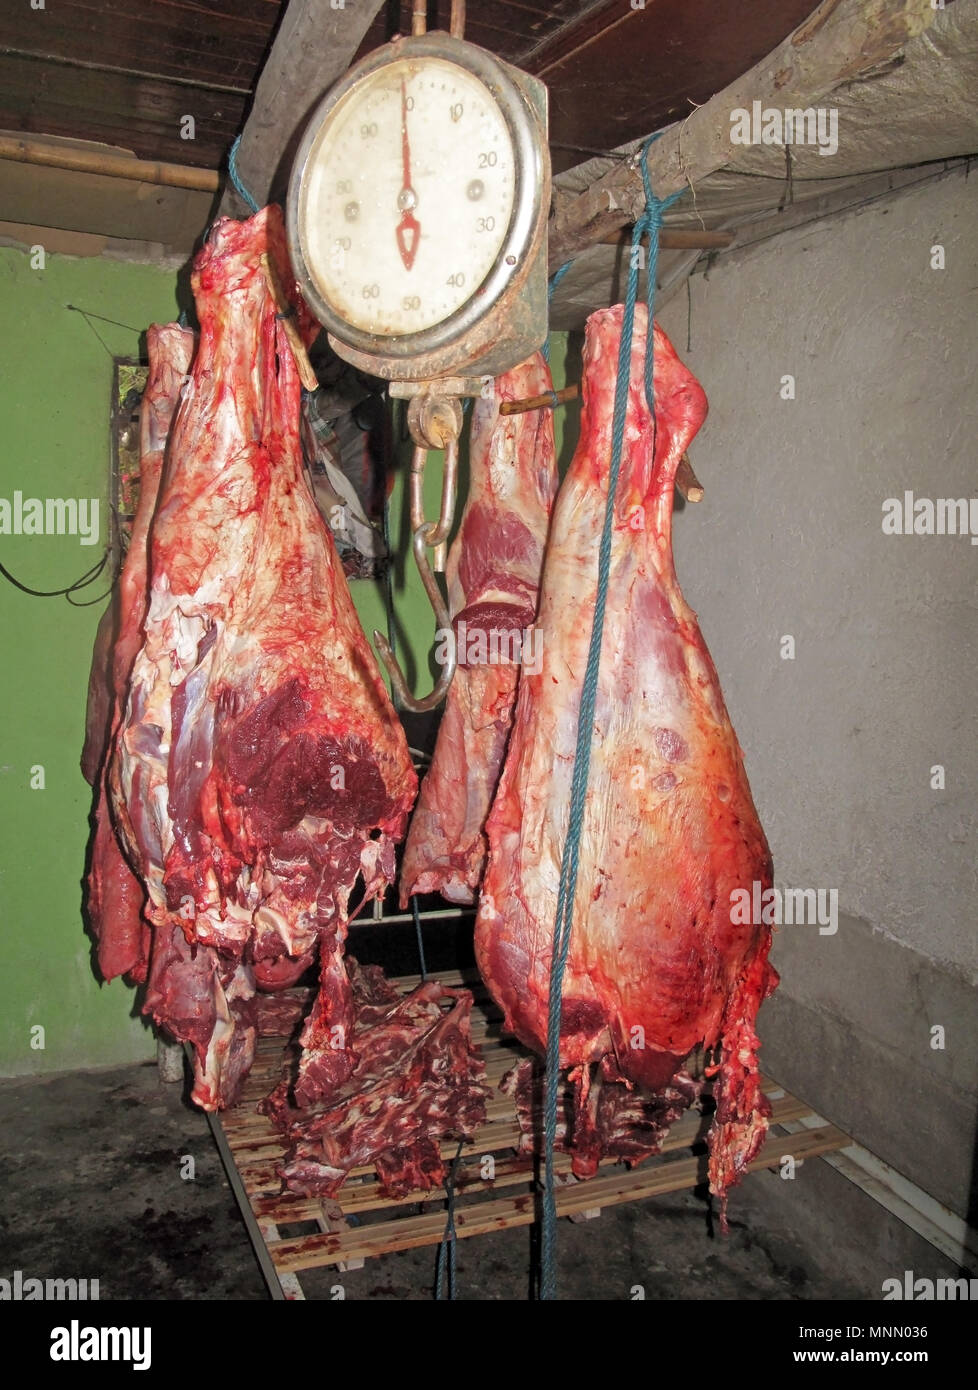 La viande de vache frais pendaison, Colombie Banque D'Images